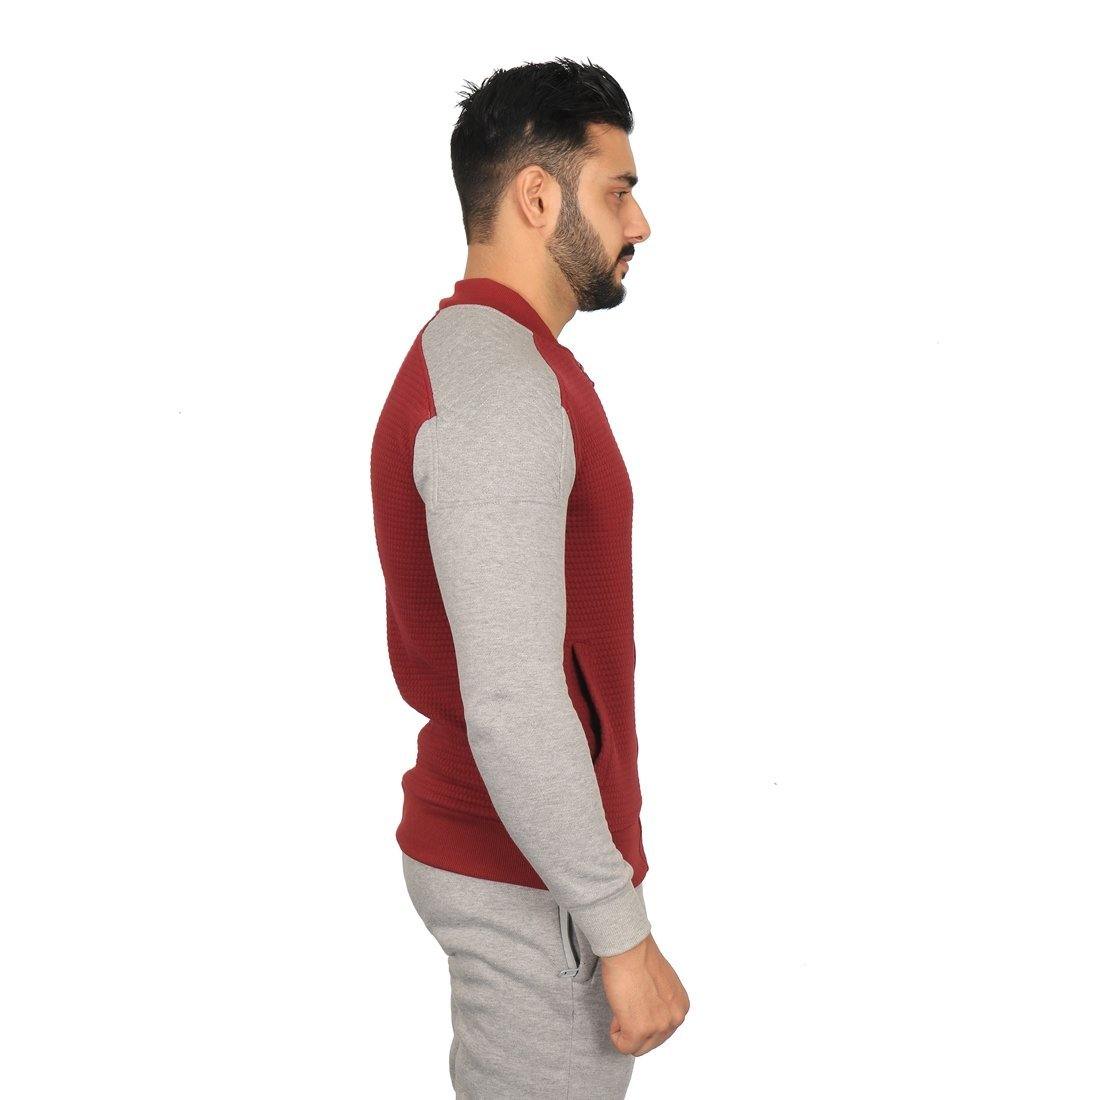 Vector X Fleece-X Track Suit Red-Grey - Best Price online Prokicksports.com